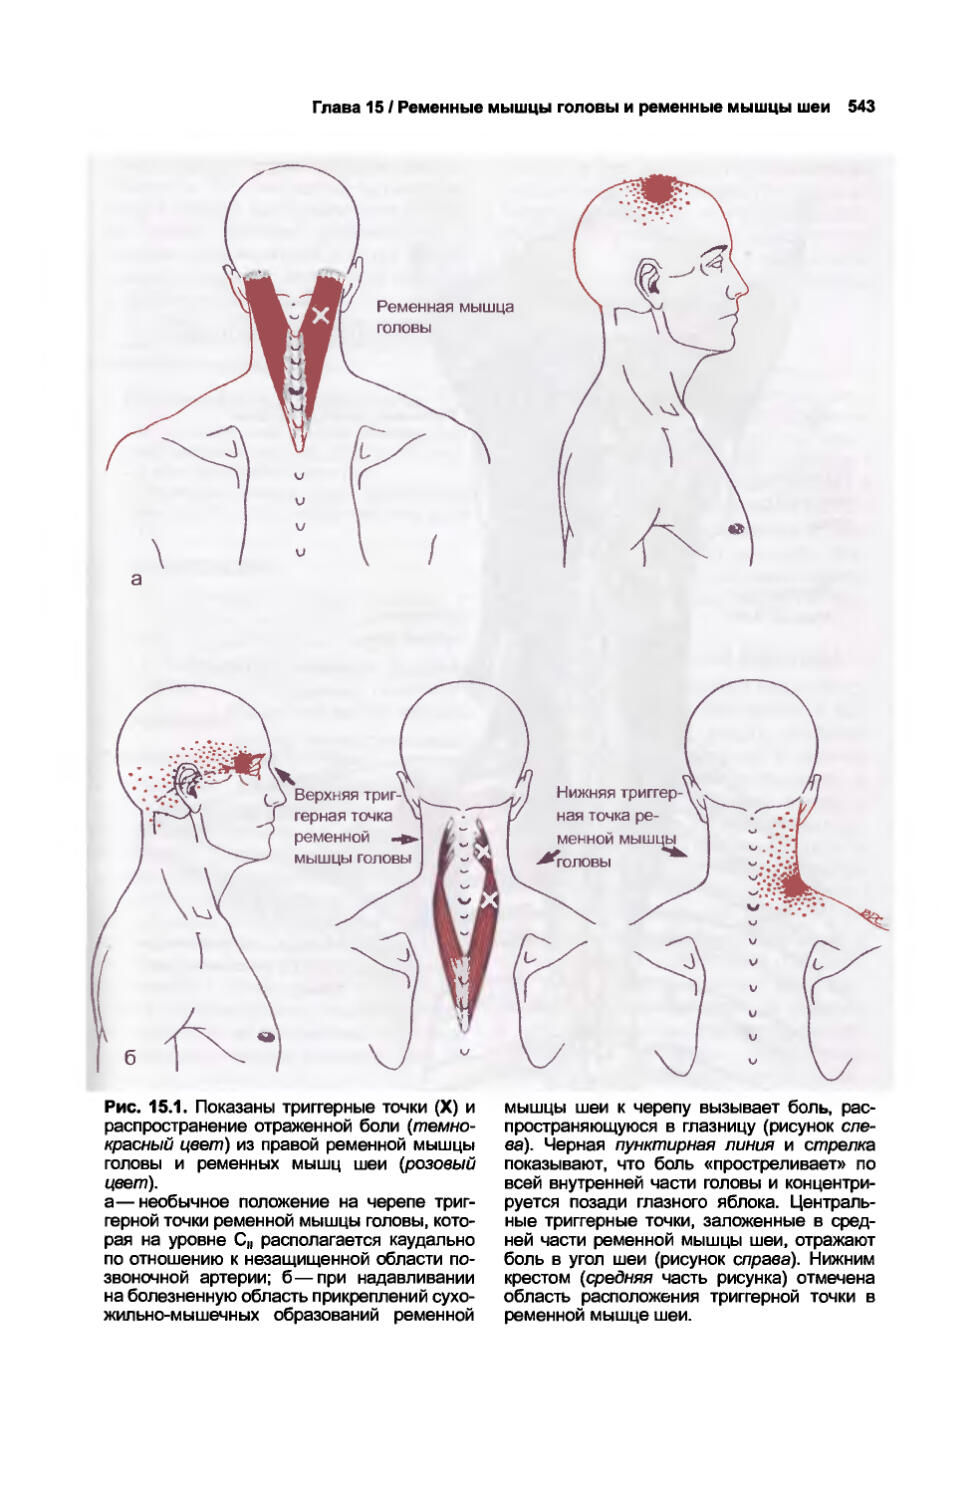 Миофасциальные дисфункции. Миофасциальные триггерные точки головы. Массаж ременной мышцы головы и шеи. Карта триггерных точек с отраженными болями. Фото верхней половины туловища.